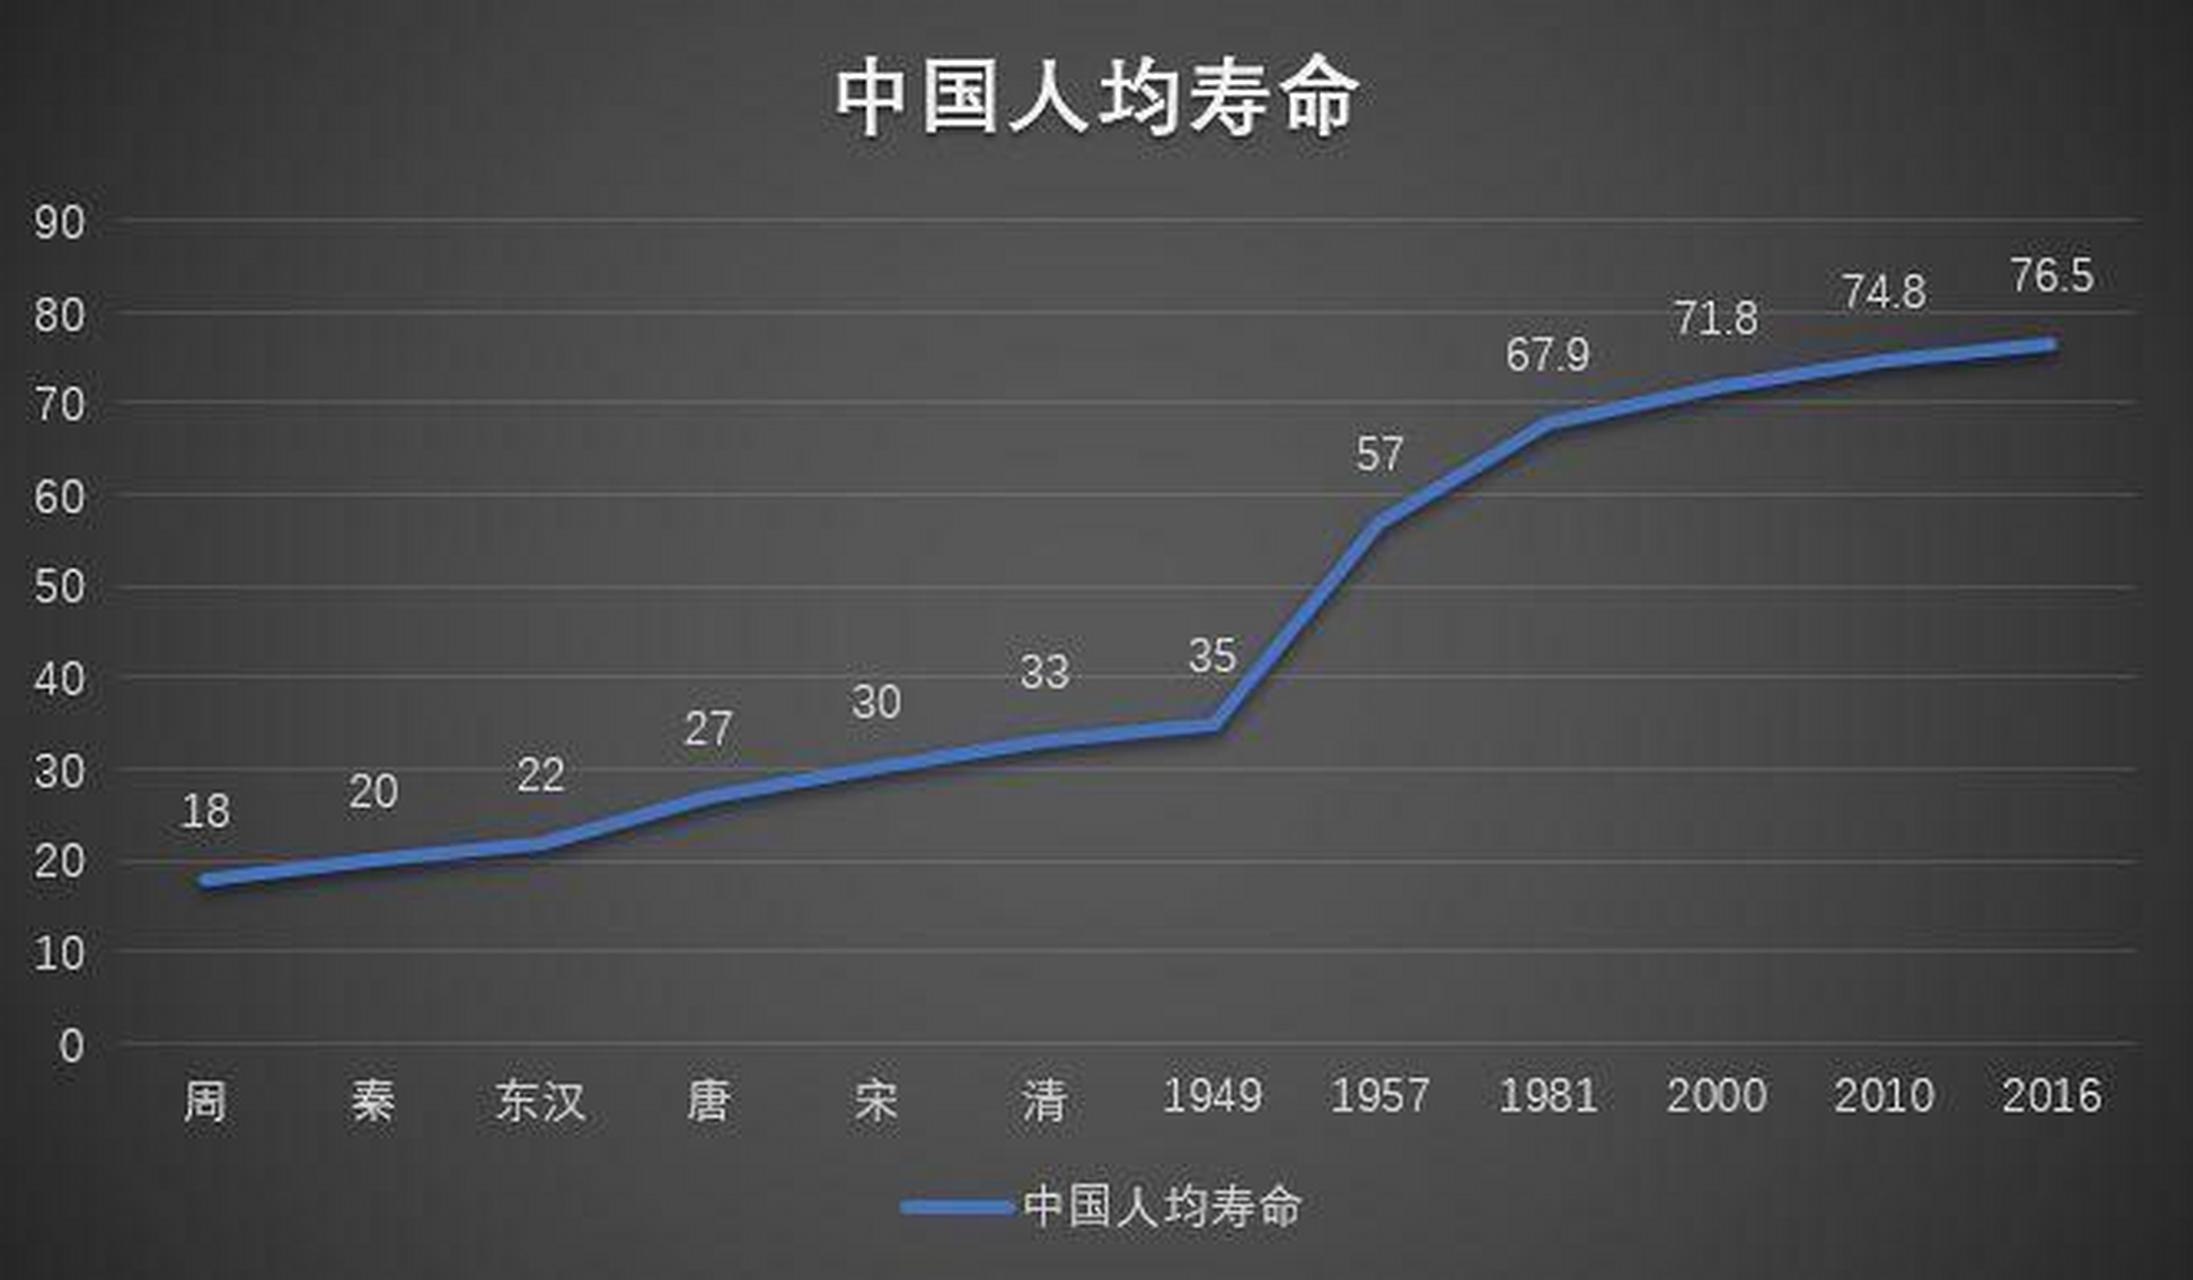 1949年,中国人的平均寿命是35岁 1957年,中国人的平均寿命是57岁